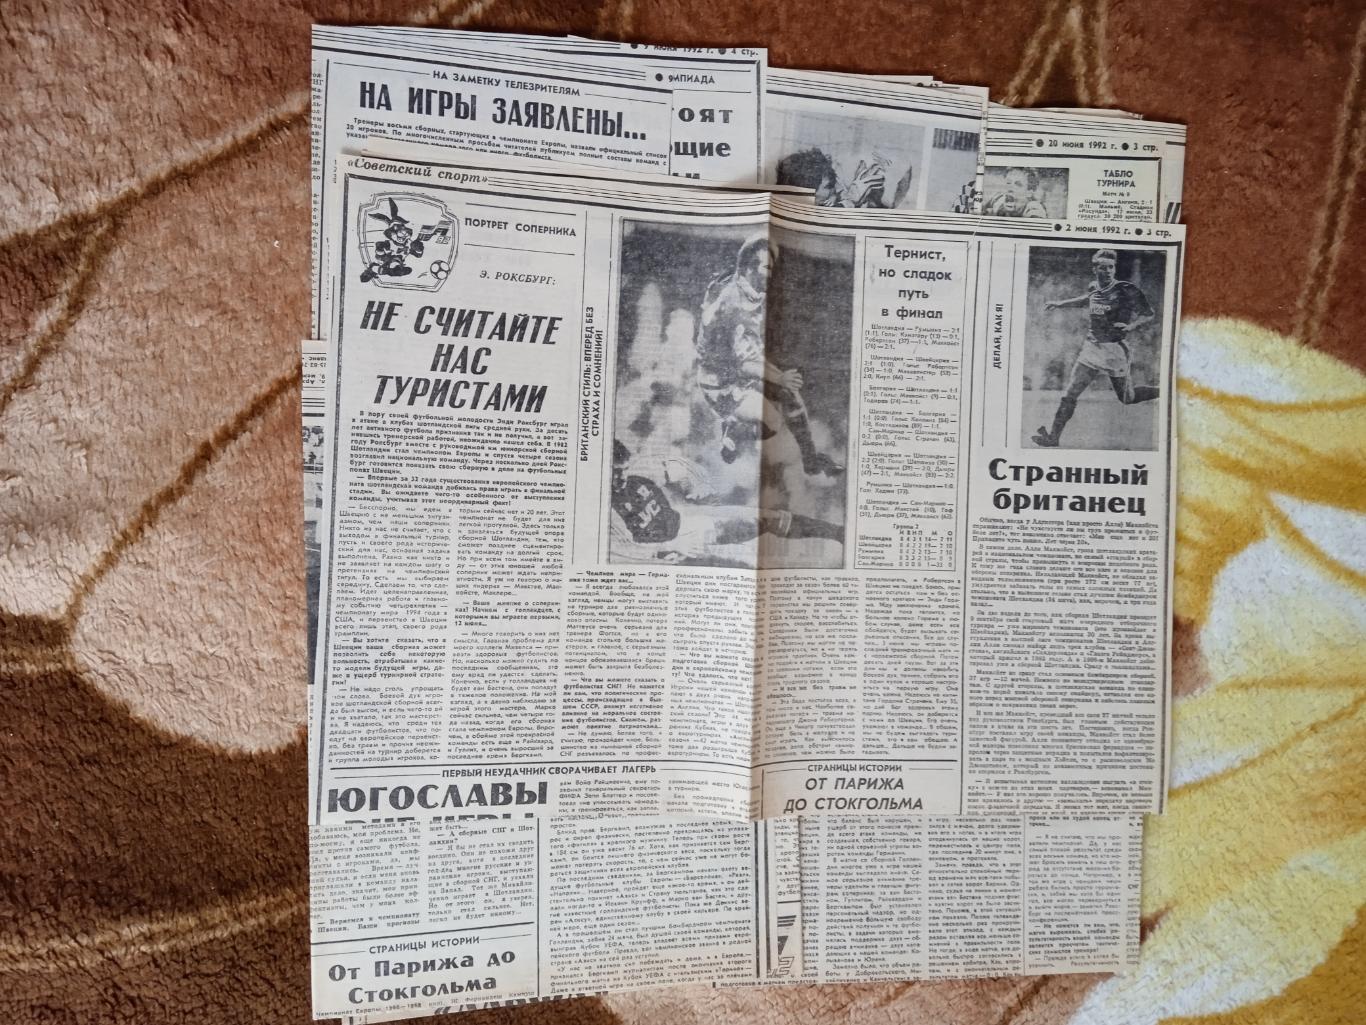 Статья.Футбол.Чемпионат Европы 1992.Швеция.Газета Советский спорт 1992.